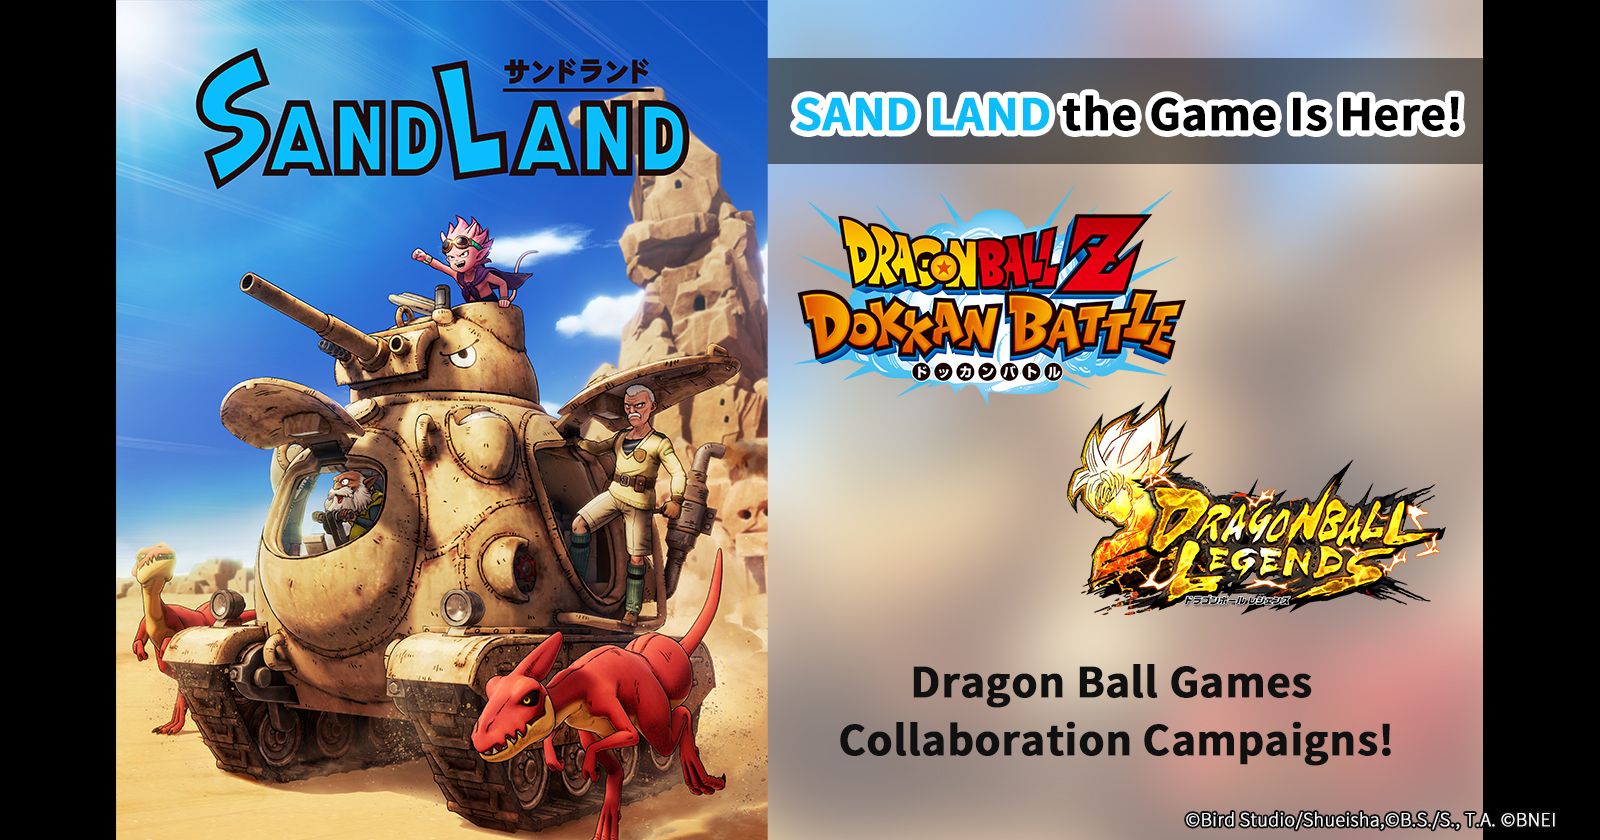 SAND LAND le jeu est sorti aujourd'hui ! Les campagnes de Collaboration de Dragon Ball Games sont en cours !